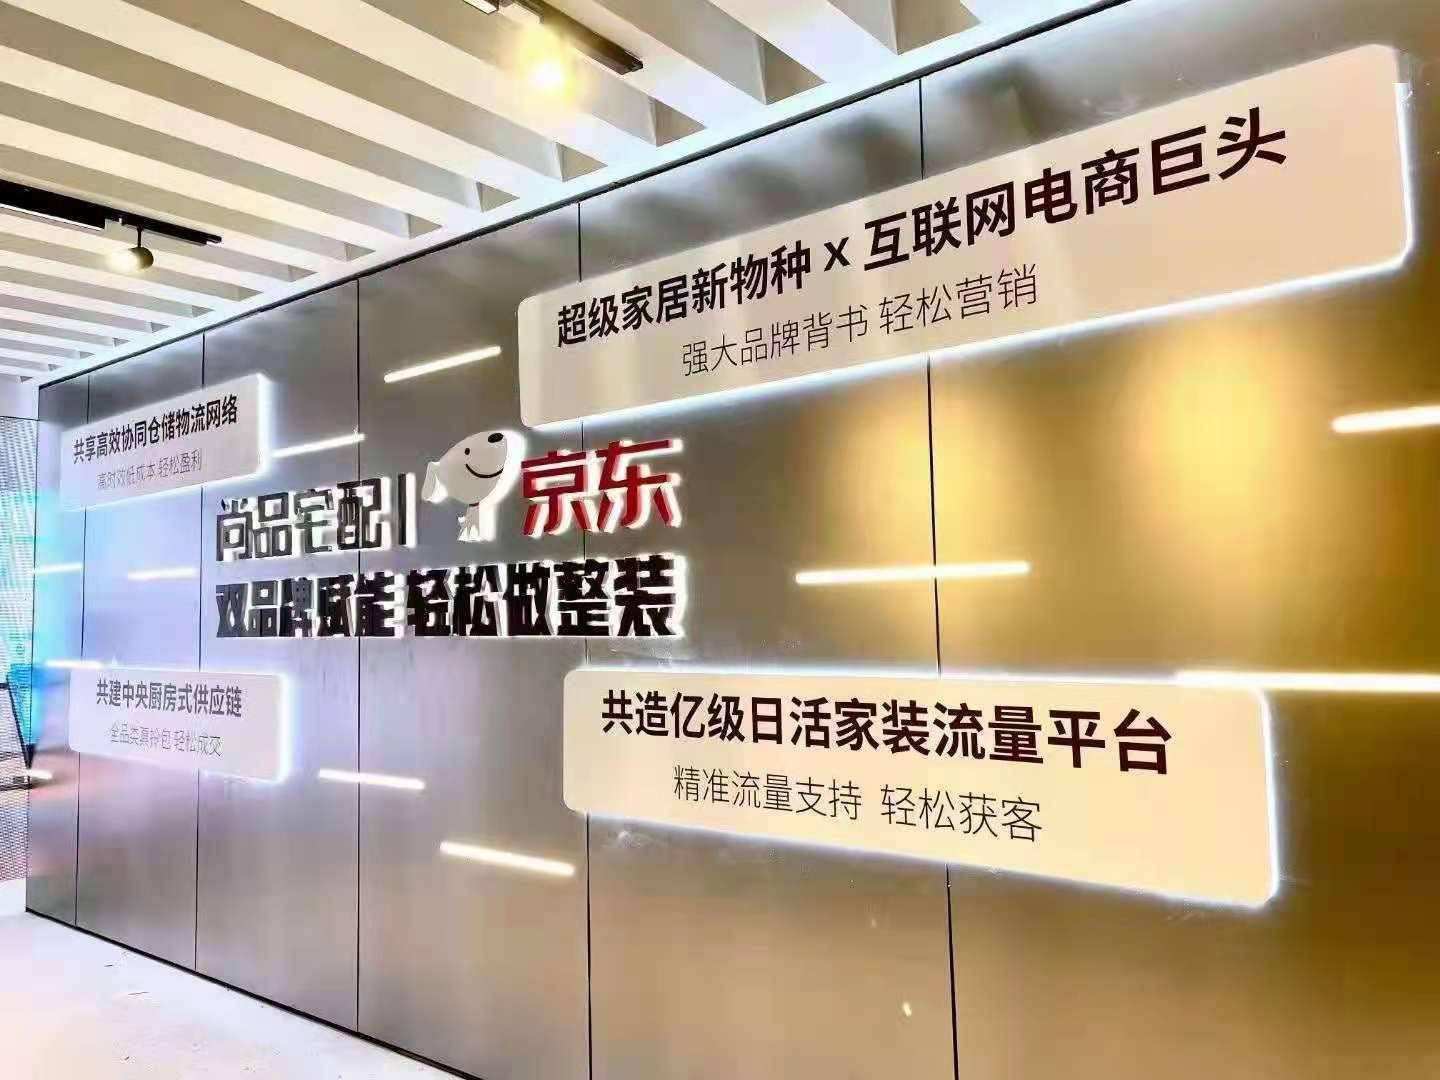 尚品宅配与北京京东终止定增，拟重新申报